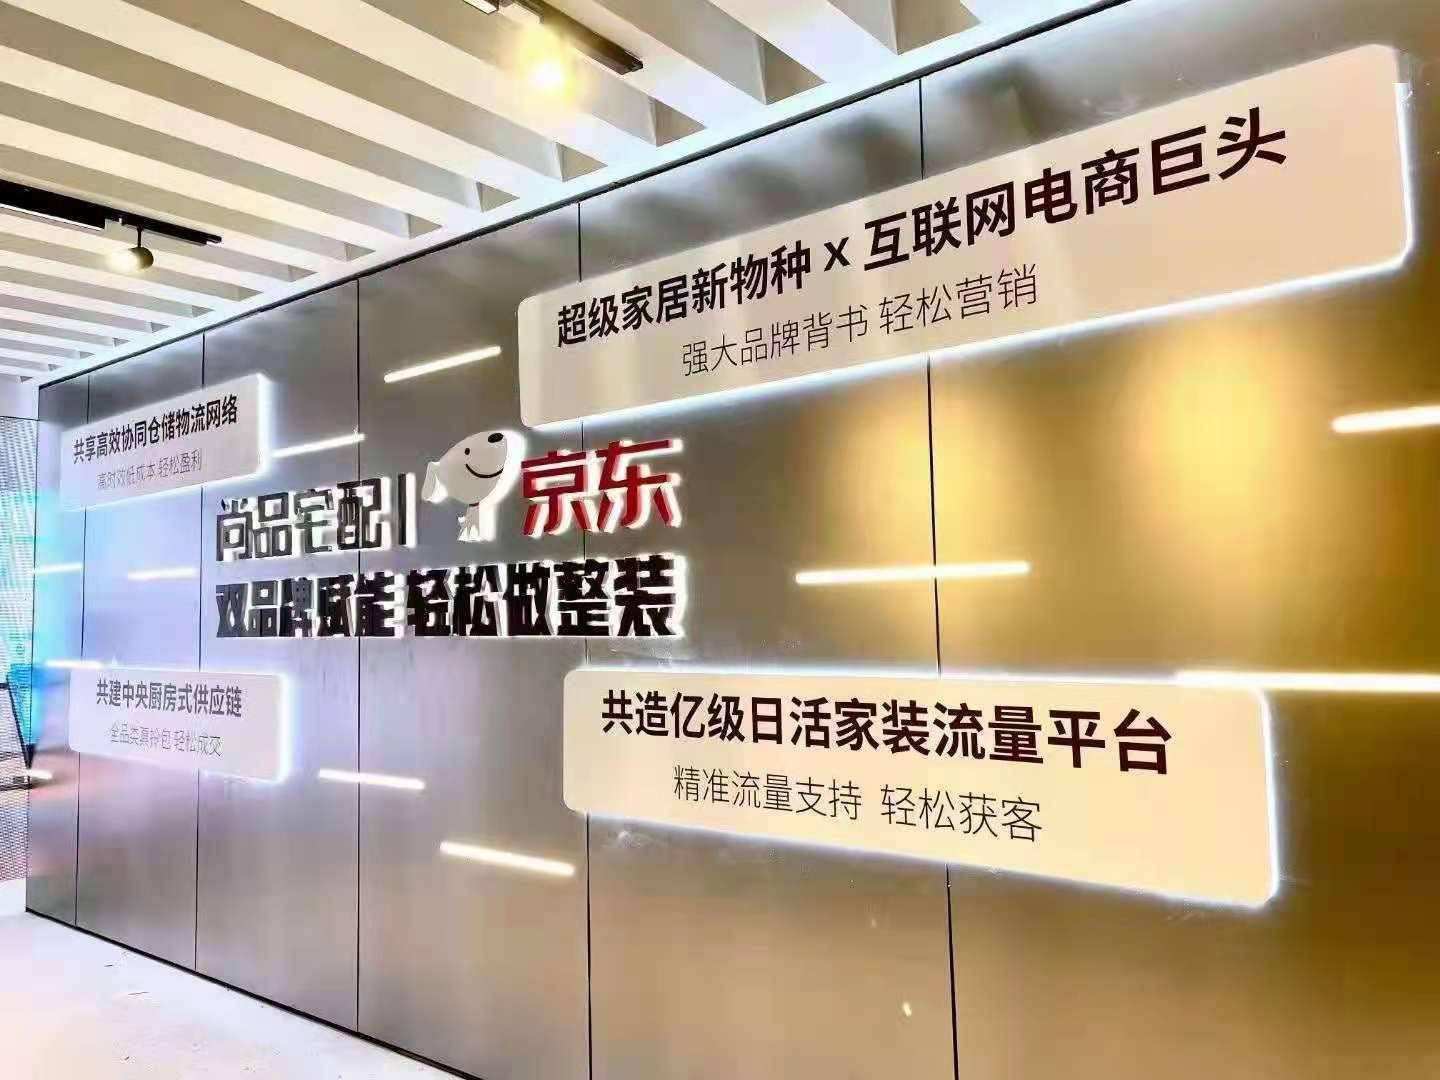 尚品宅配与北京京东终止定增，拟重新申报